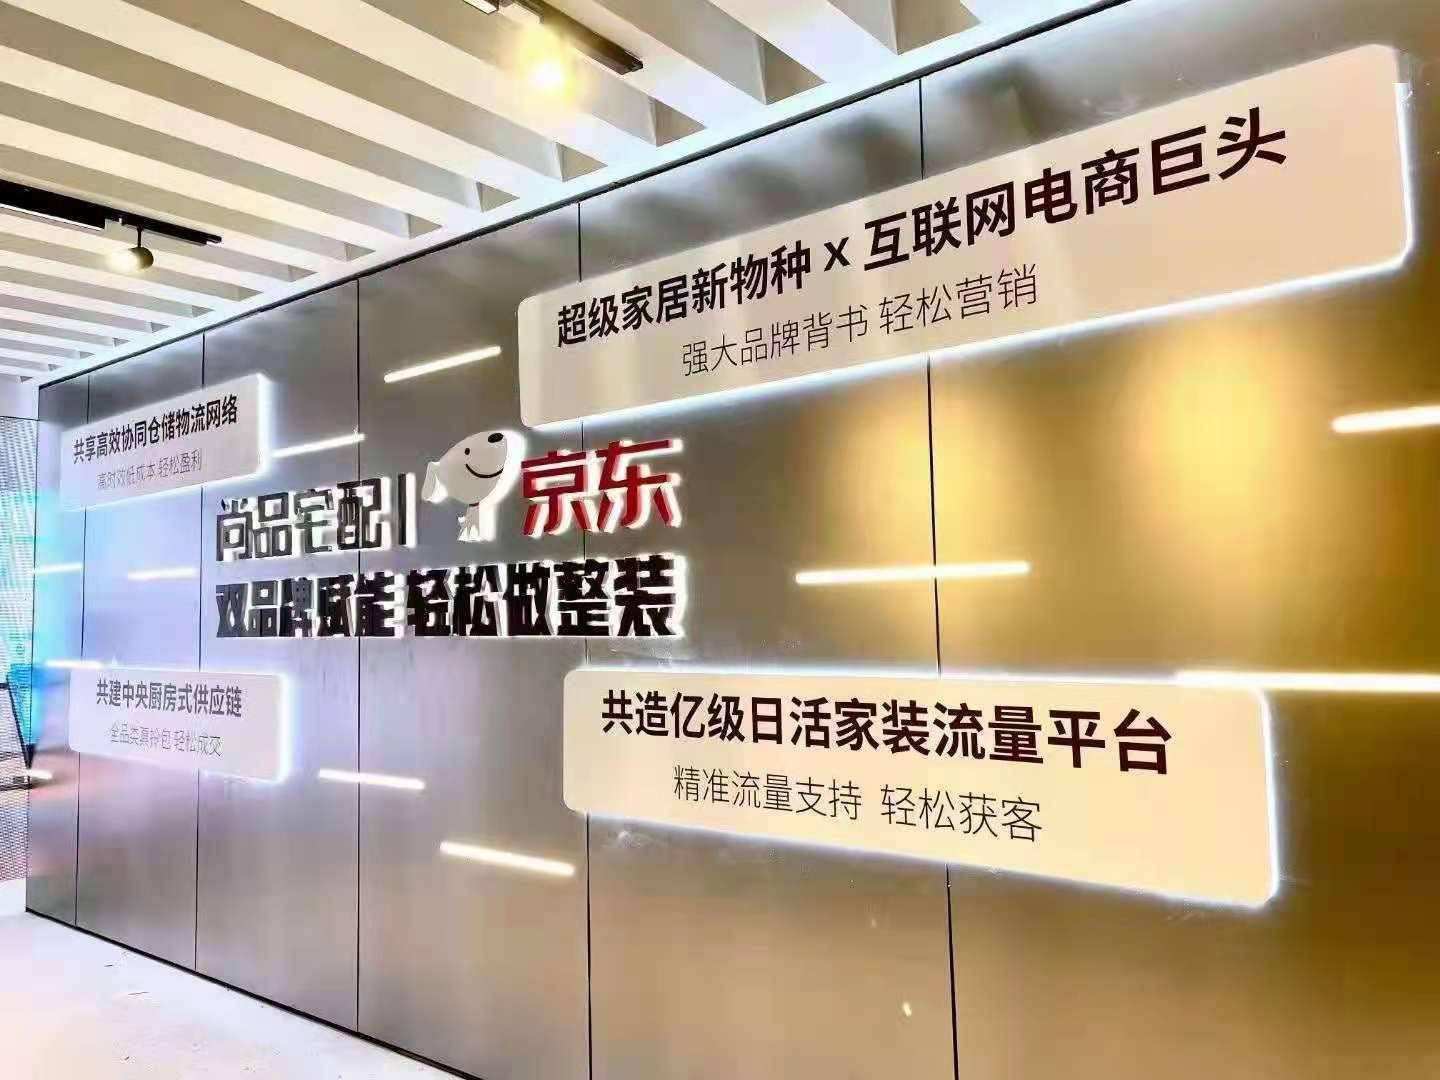 尚品宅配与北京京东终止定增，拟重新申报